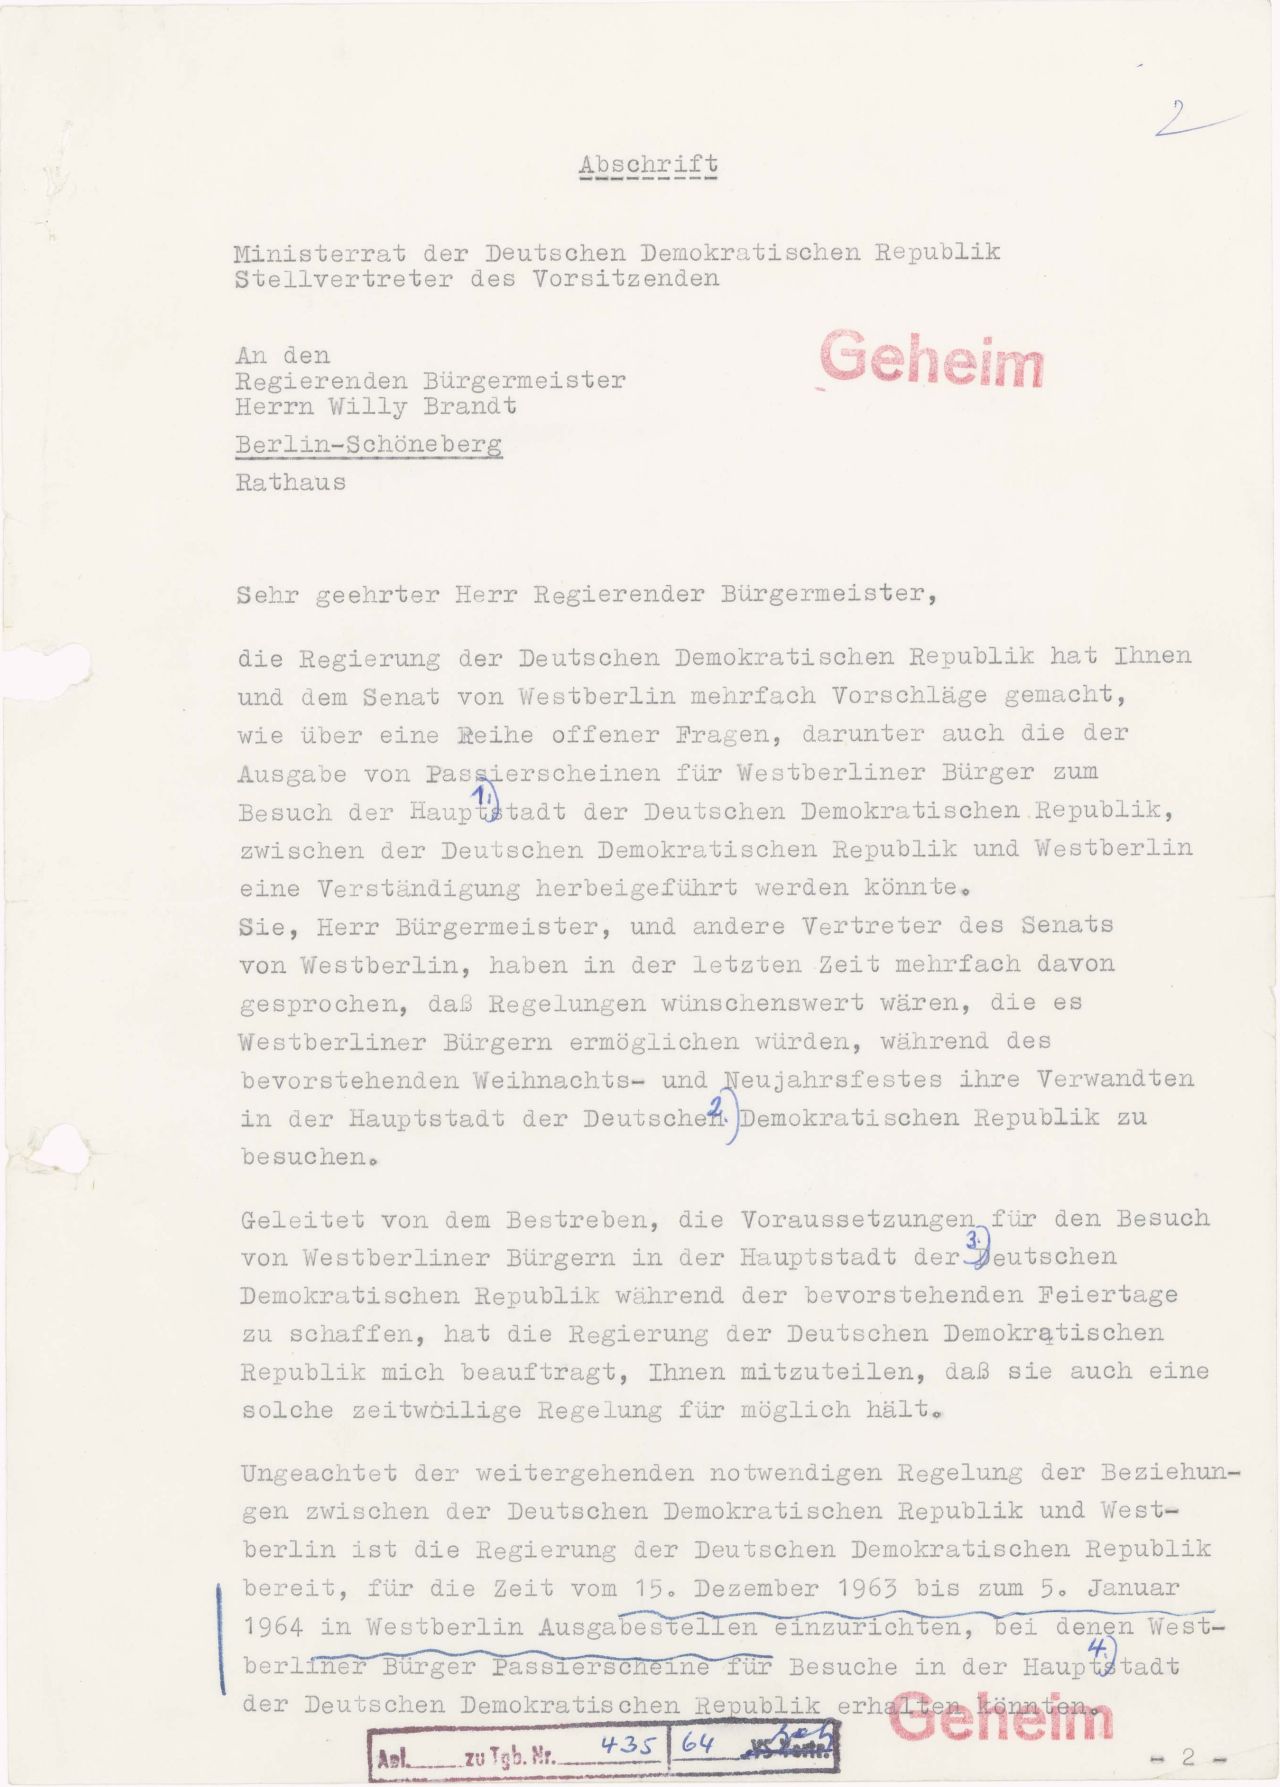 Das SED-Regime bietet eine Passierscheinregelung an, damit West-Berliner Verwandte in Ost-Berlin besuchen können.